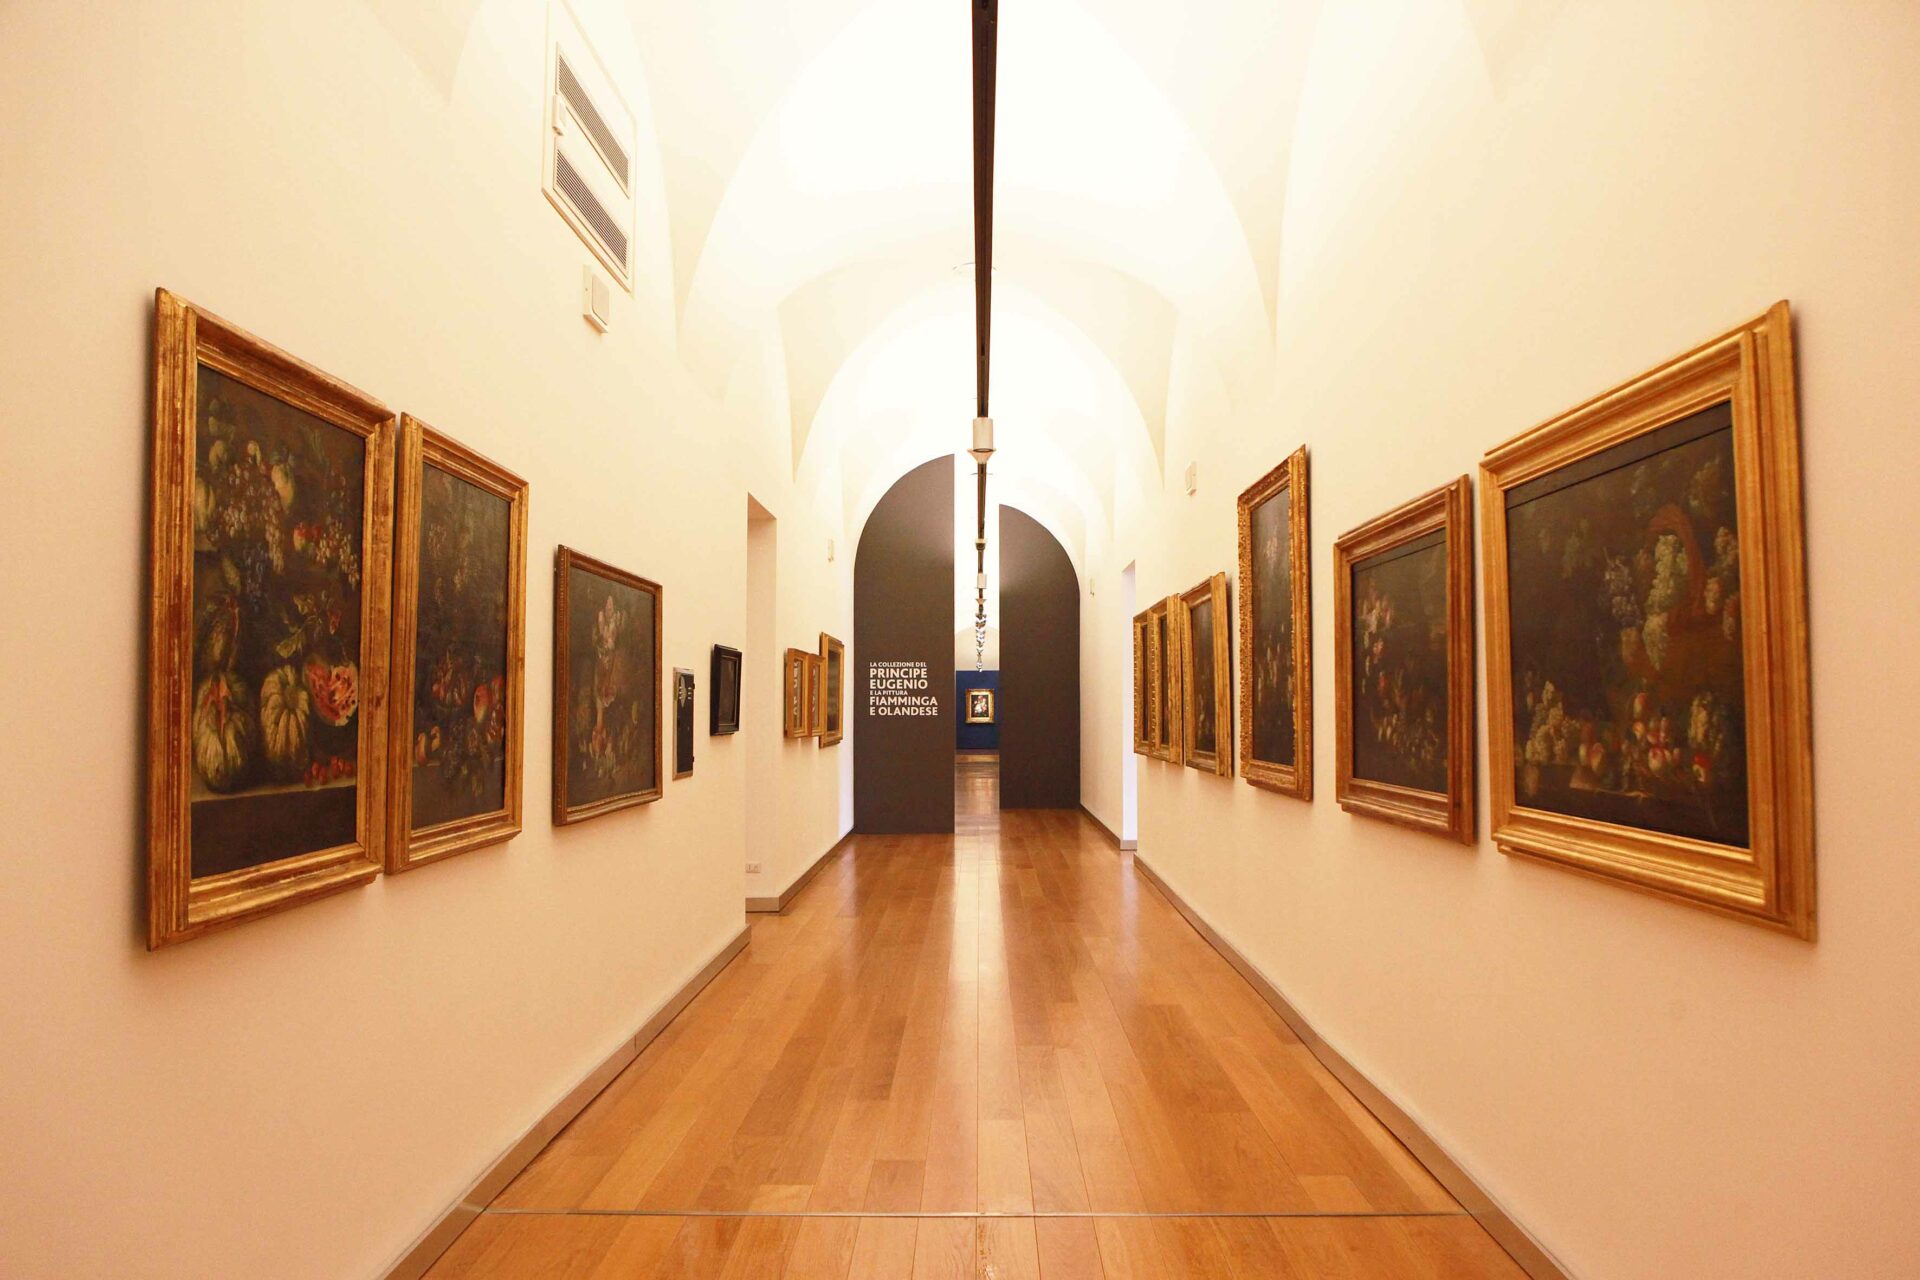 La collezione del principe Eugenio di Savoia Soissons, Galleria Sabauda, Musei Reali di Torino Crediti Daniele Bottallo / DB Studio Agency per i Musei Reali di Torino